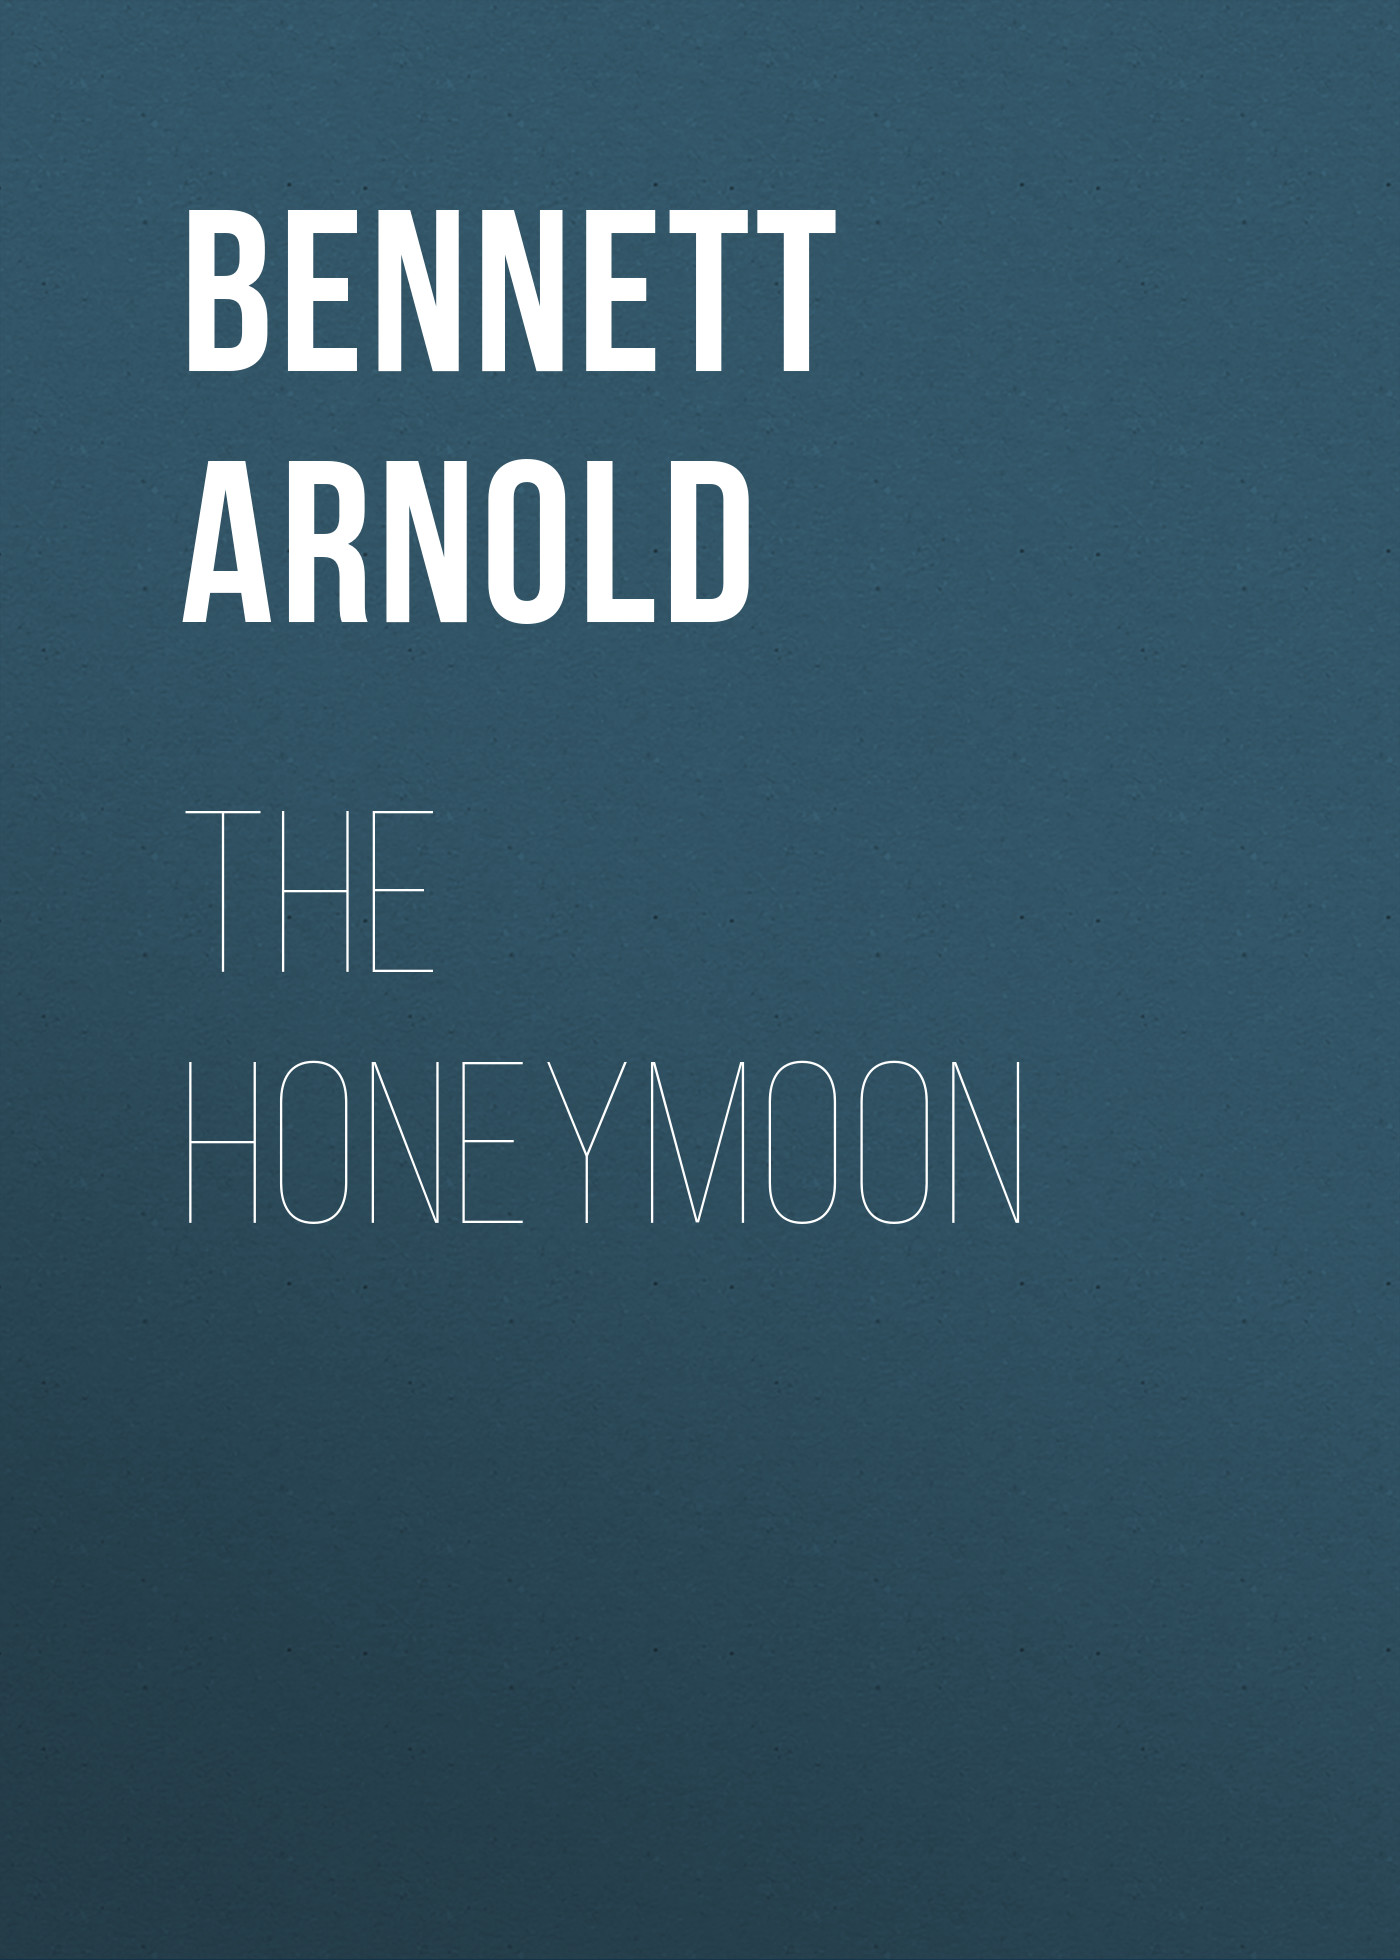 Книга The Honeymoon из серии , созданная Arnold Bennett, может относится к жанру Зарубежная старинная литература, Зарубежная классика, Иностранные языки. Стоимость электронной книги The Honeymoon с идентификатором 24173660 составляет 0 руб.